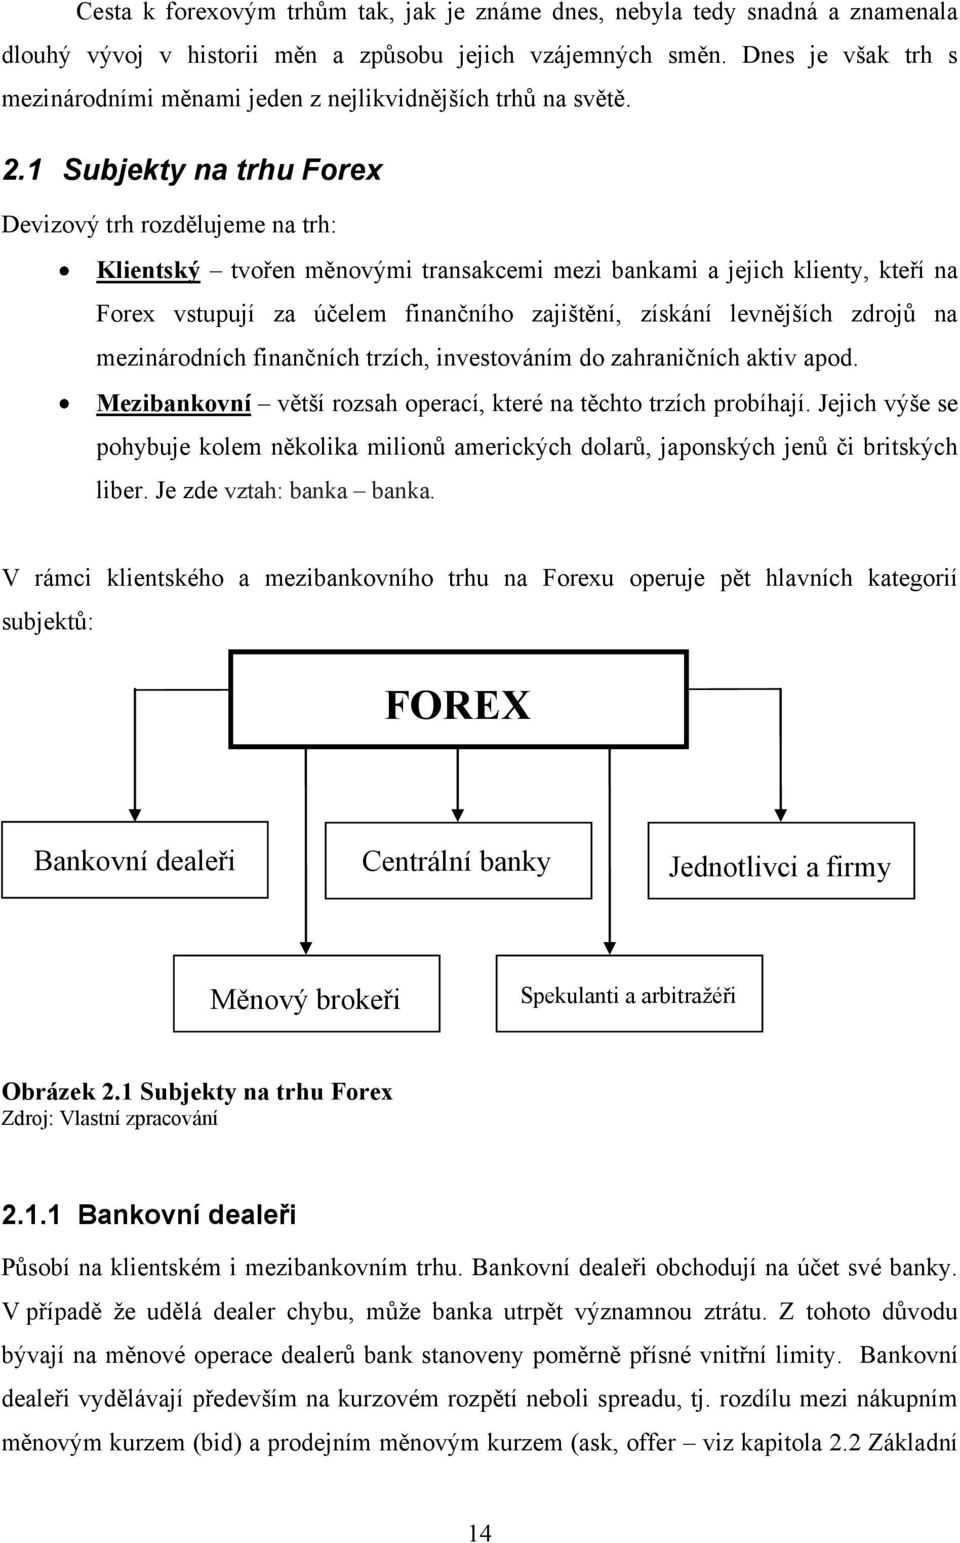 1 Subjekty na trhu Forex Devizový trh rozdělujeme na trh: Klientský tvořen měnovými transakcemi mezi bankami a jejich klienty, kteří na Forex vstupují za účelem finančního zajińtění, získání